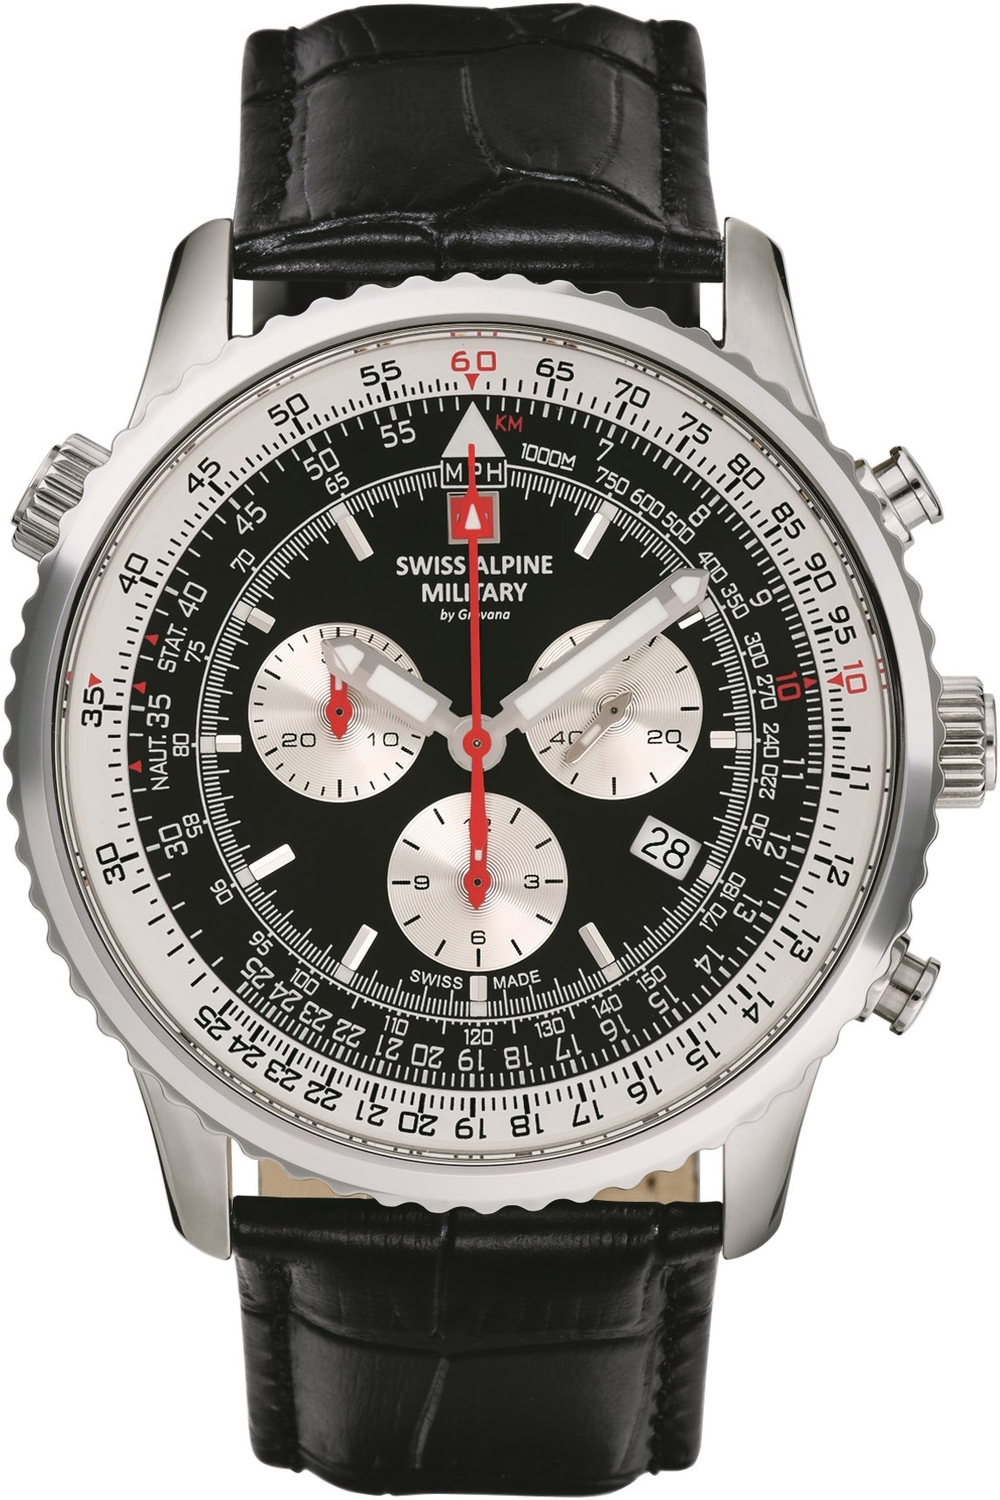 SWISS ALPINE MILITARY  Мужские швейцарские часы, кварцевый механизм, сталь, 45 мм